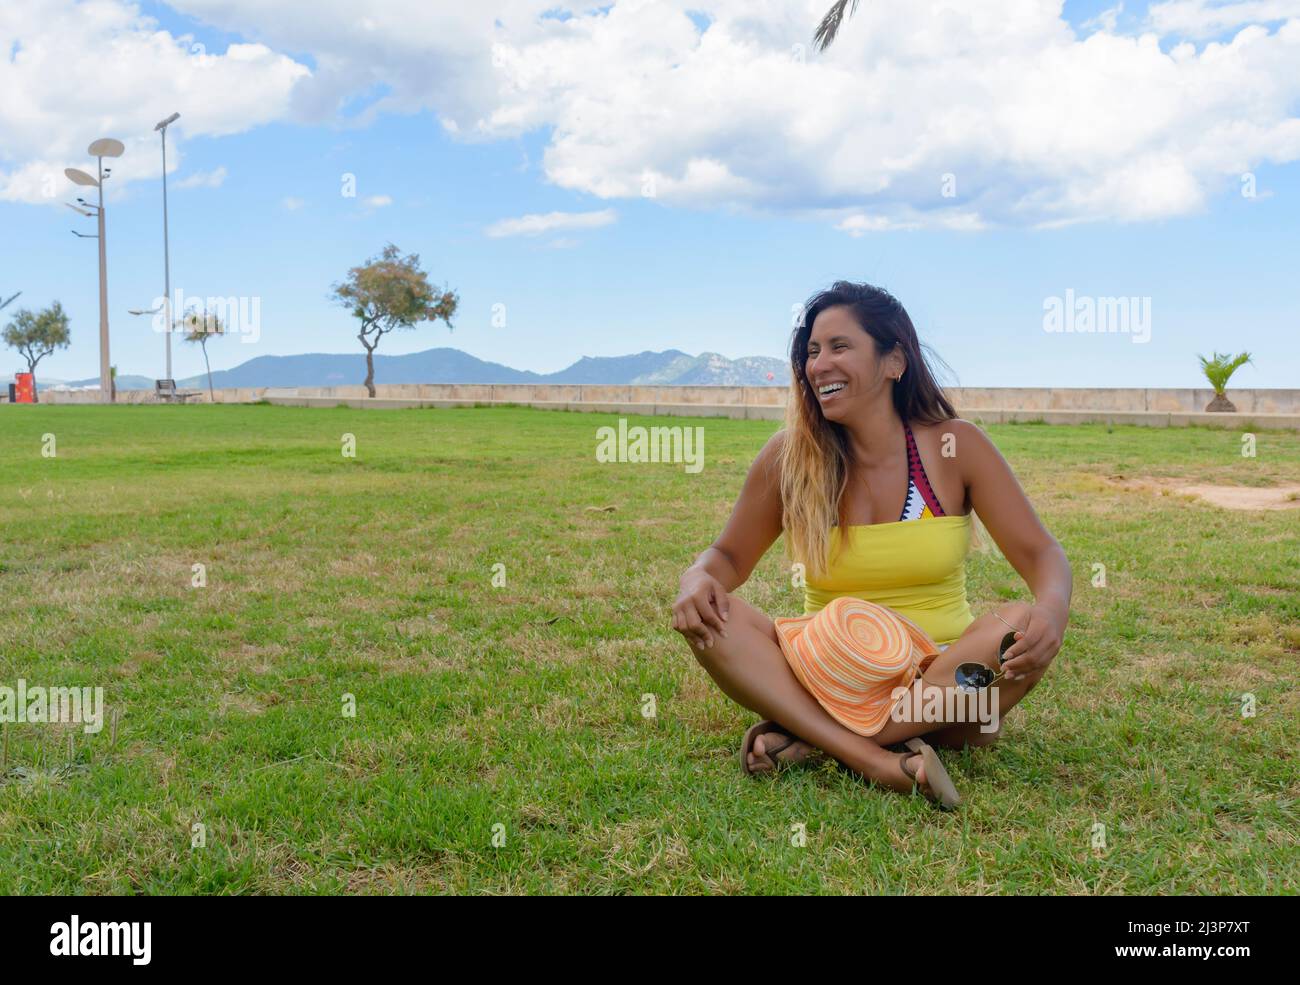 Schöne lateinische Frau 40 Jahre alt, lächelnd sitzt auf dem Rasen eines Parks auf Mallorca, balearen, hollidays Konzept Stockfoto